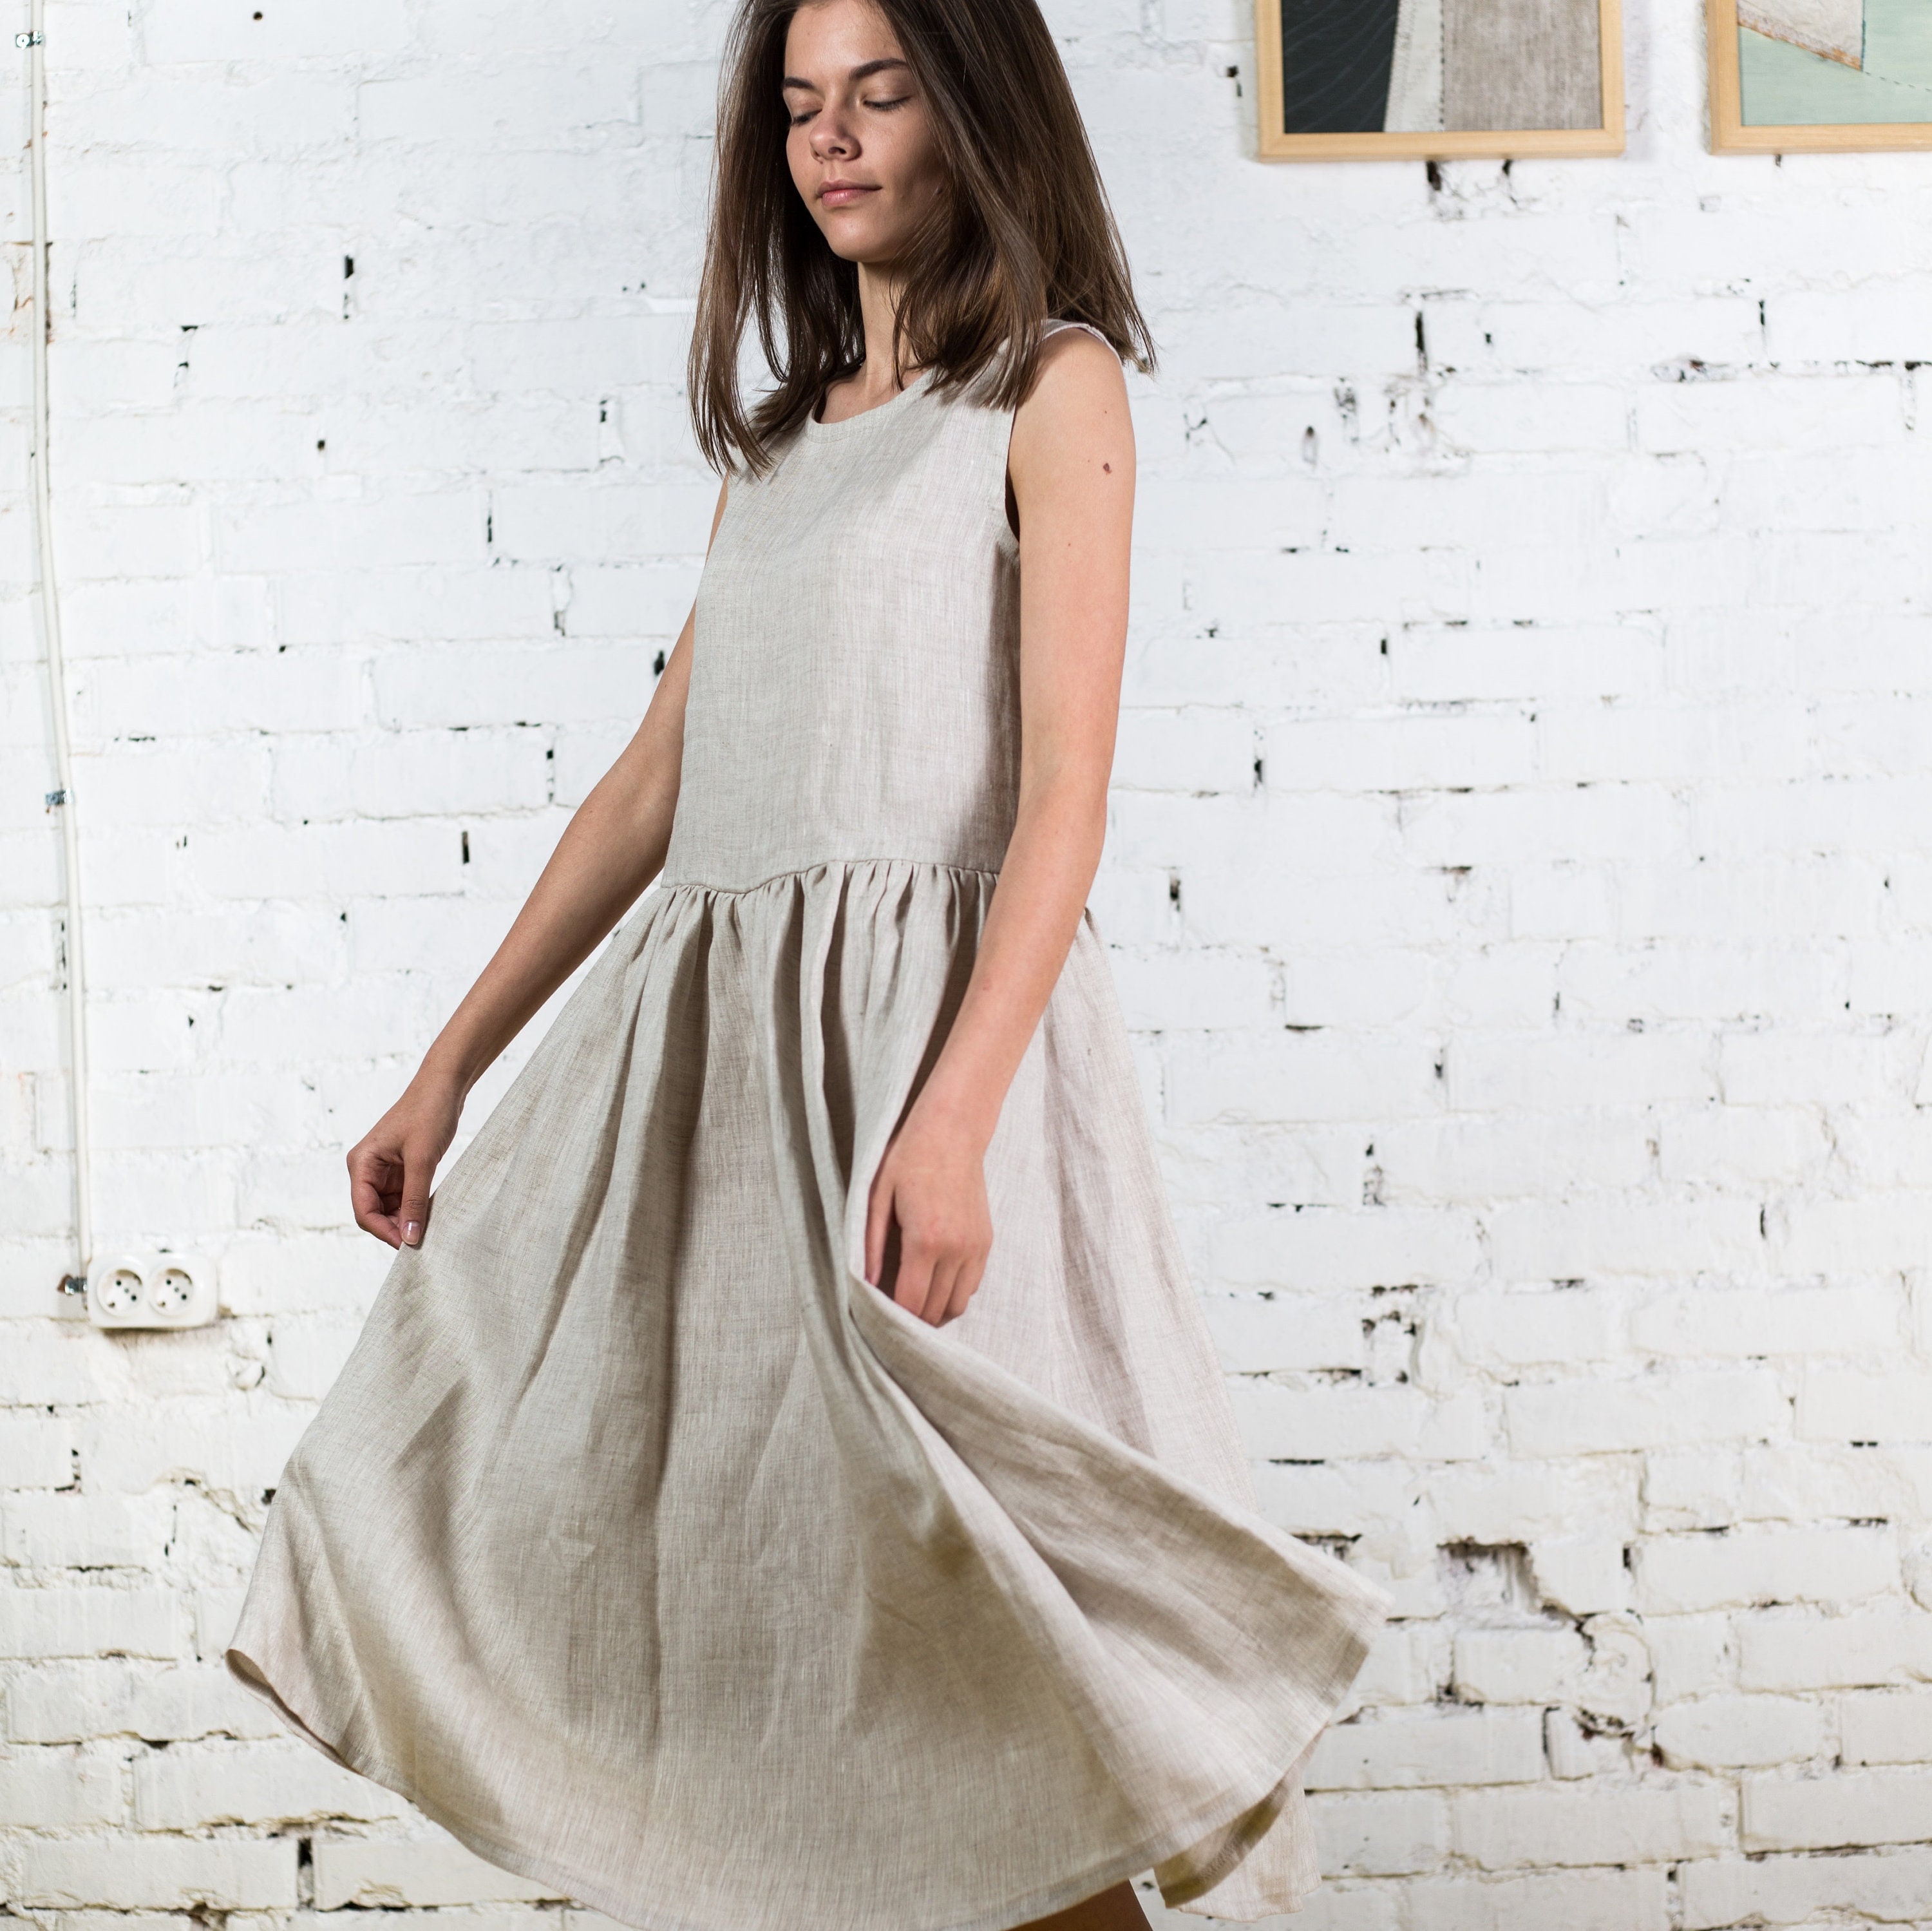 Linen dress GISELLE / Sleeveless summer midi dress / Linen | Etsy